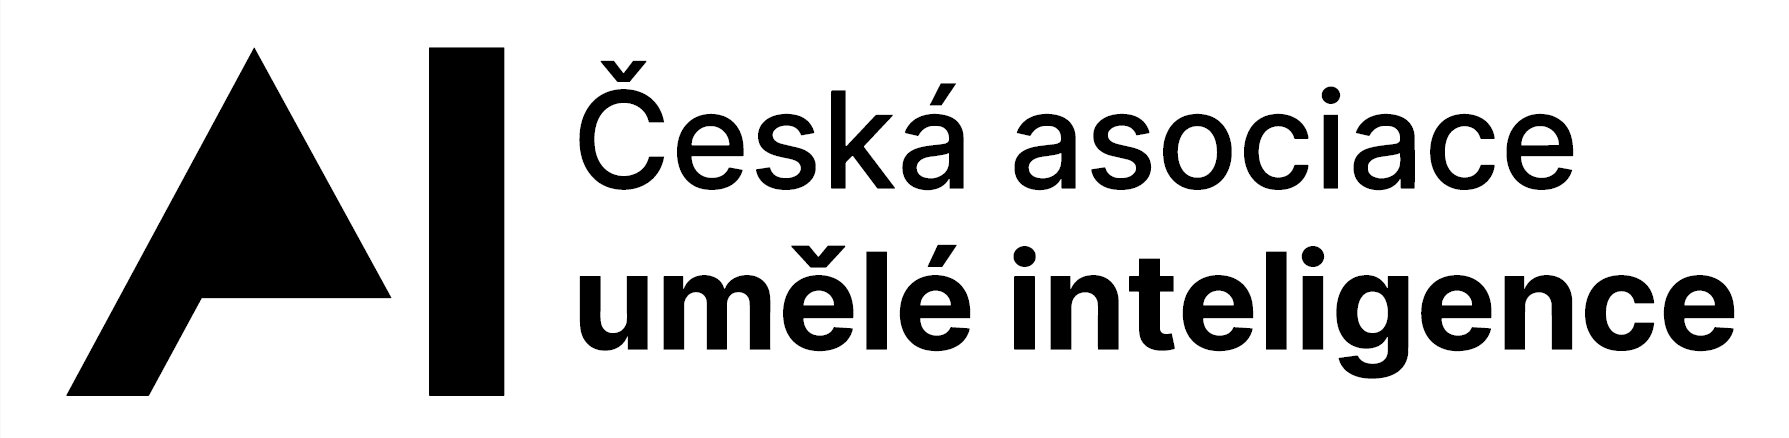 Česká asociace UI